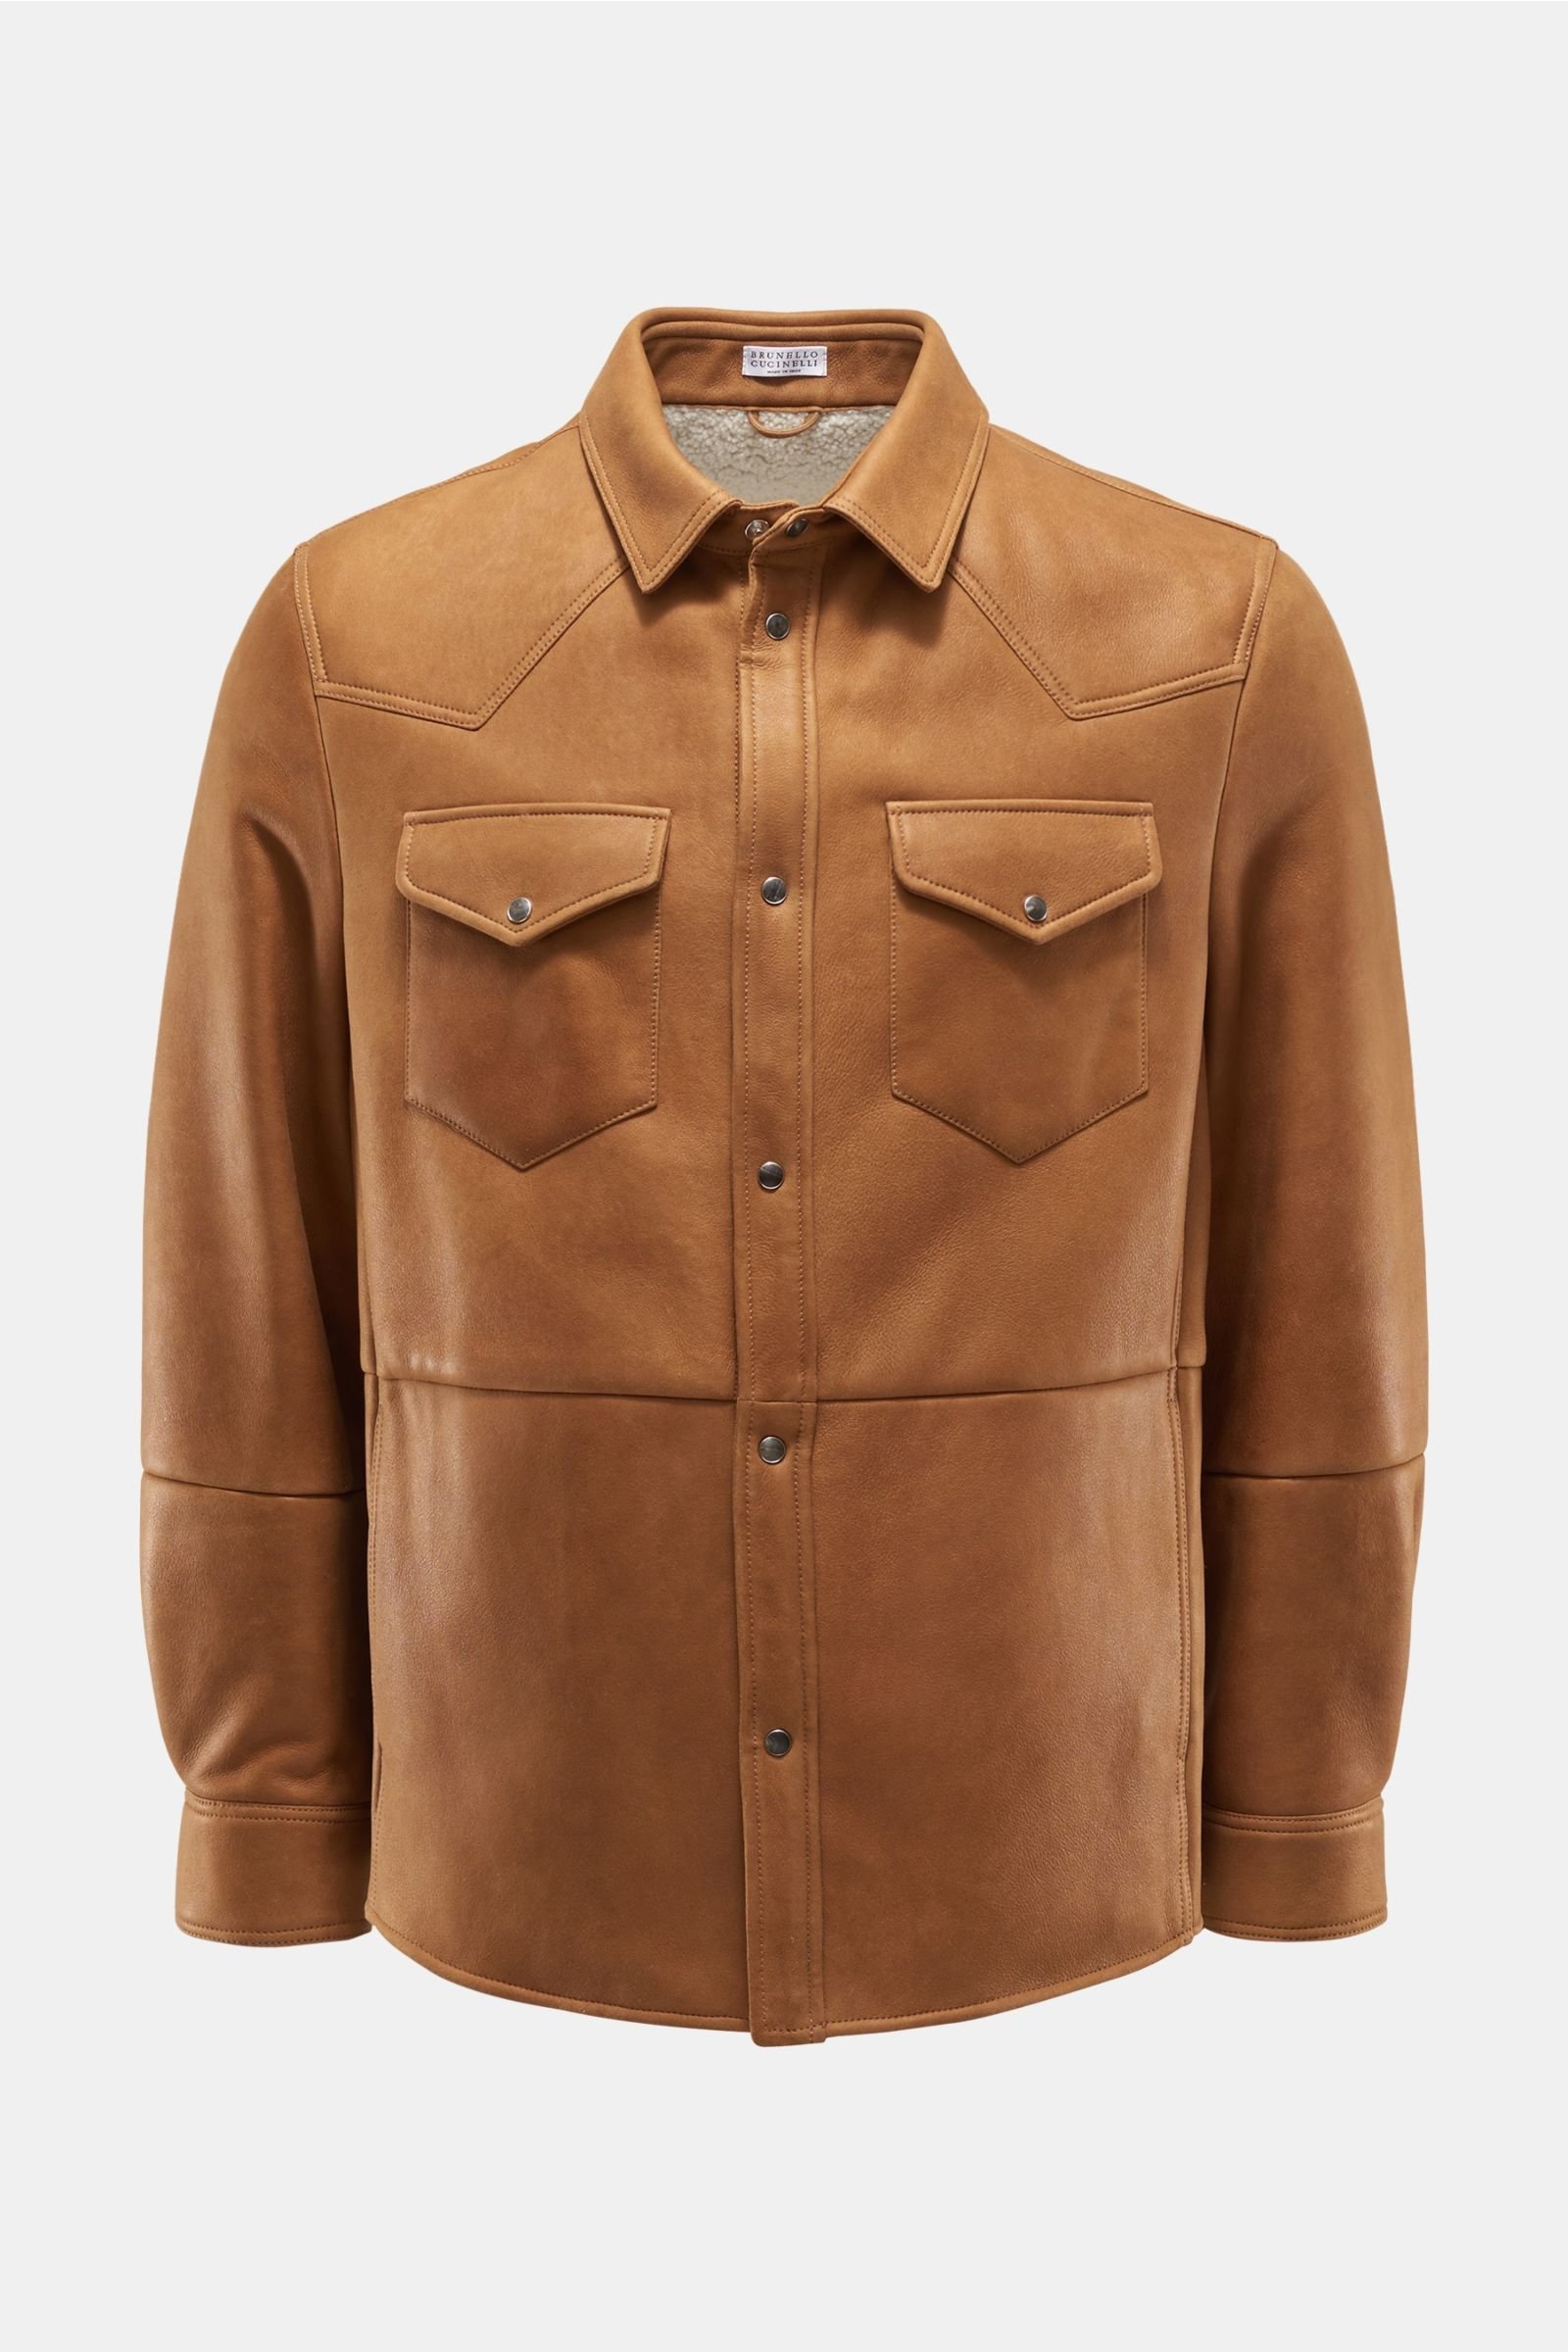 Shearling jacket brown